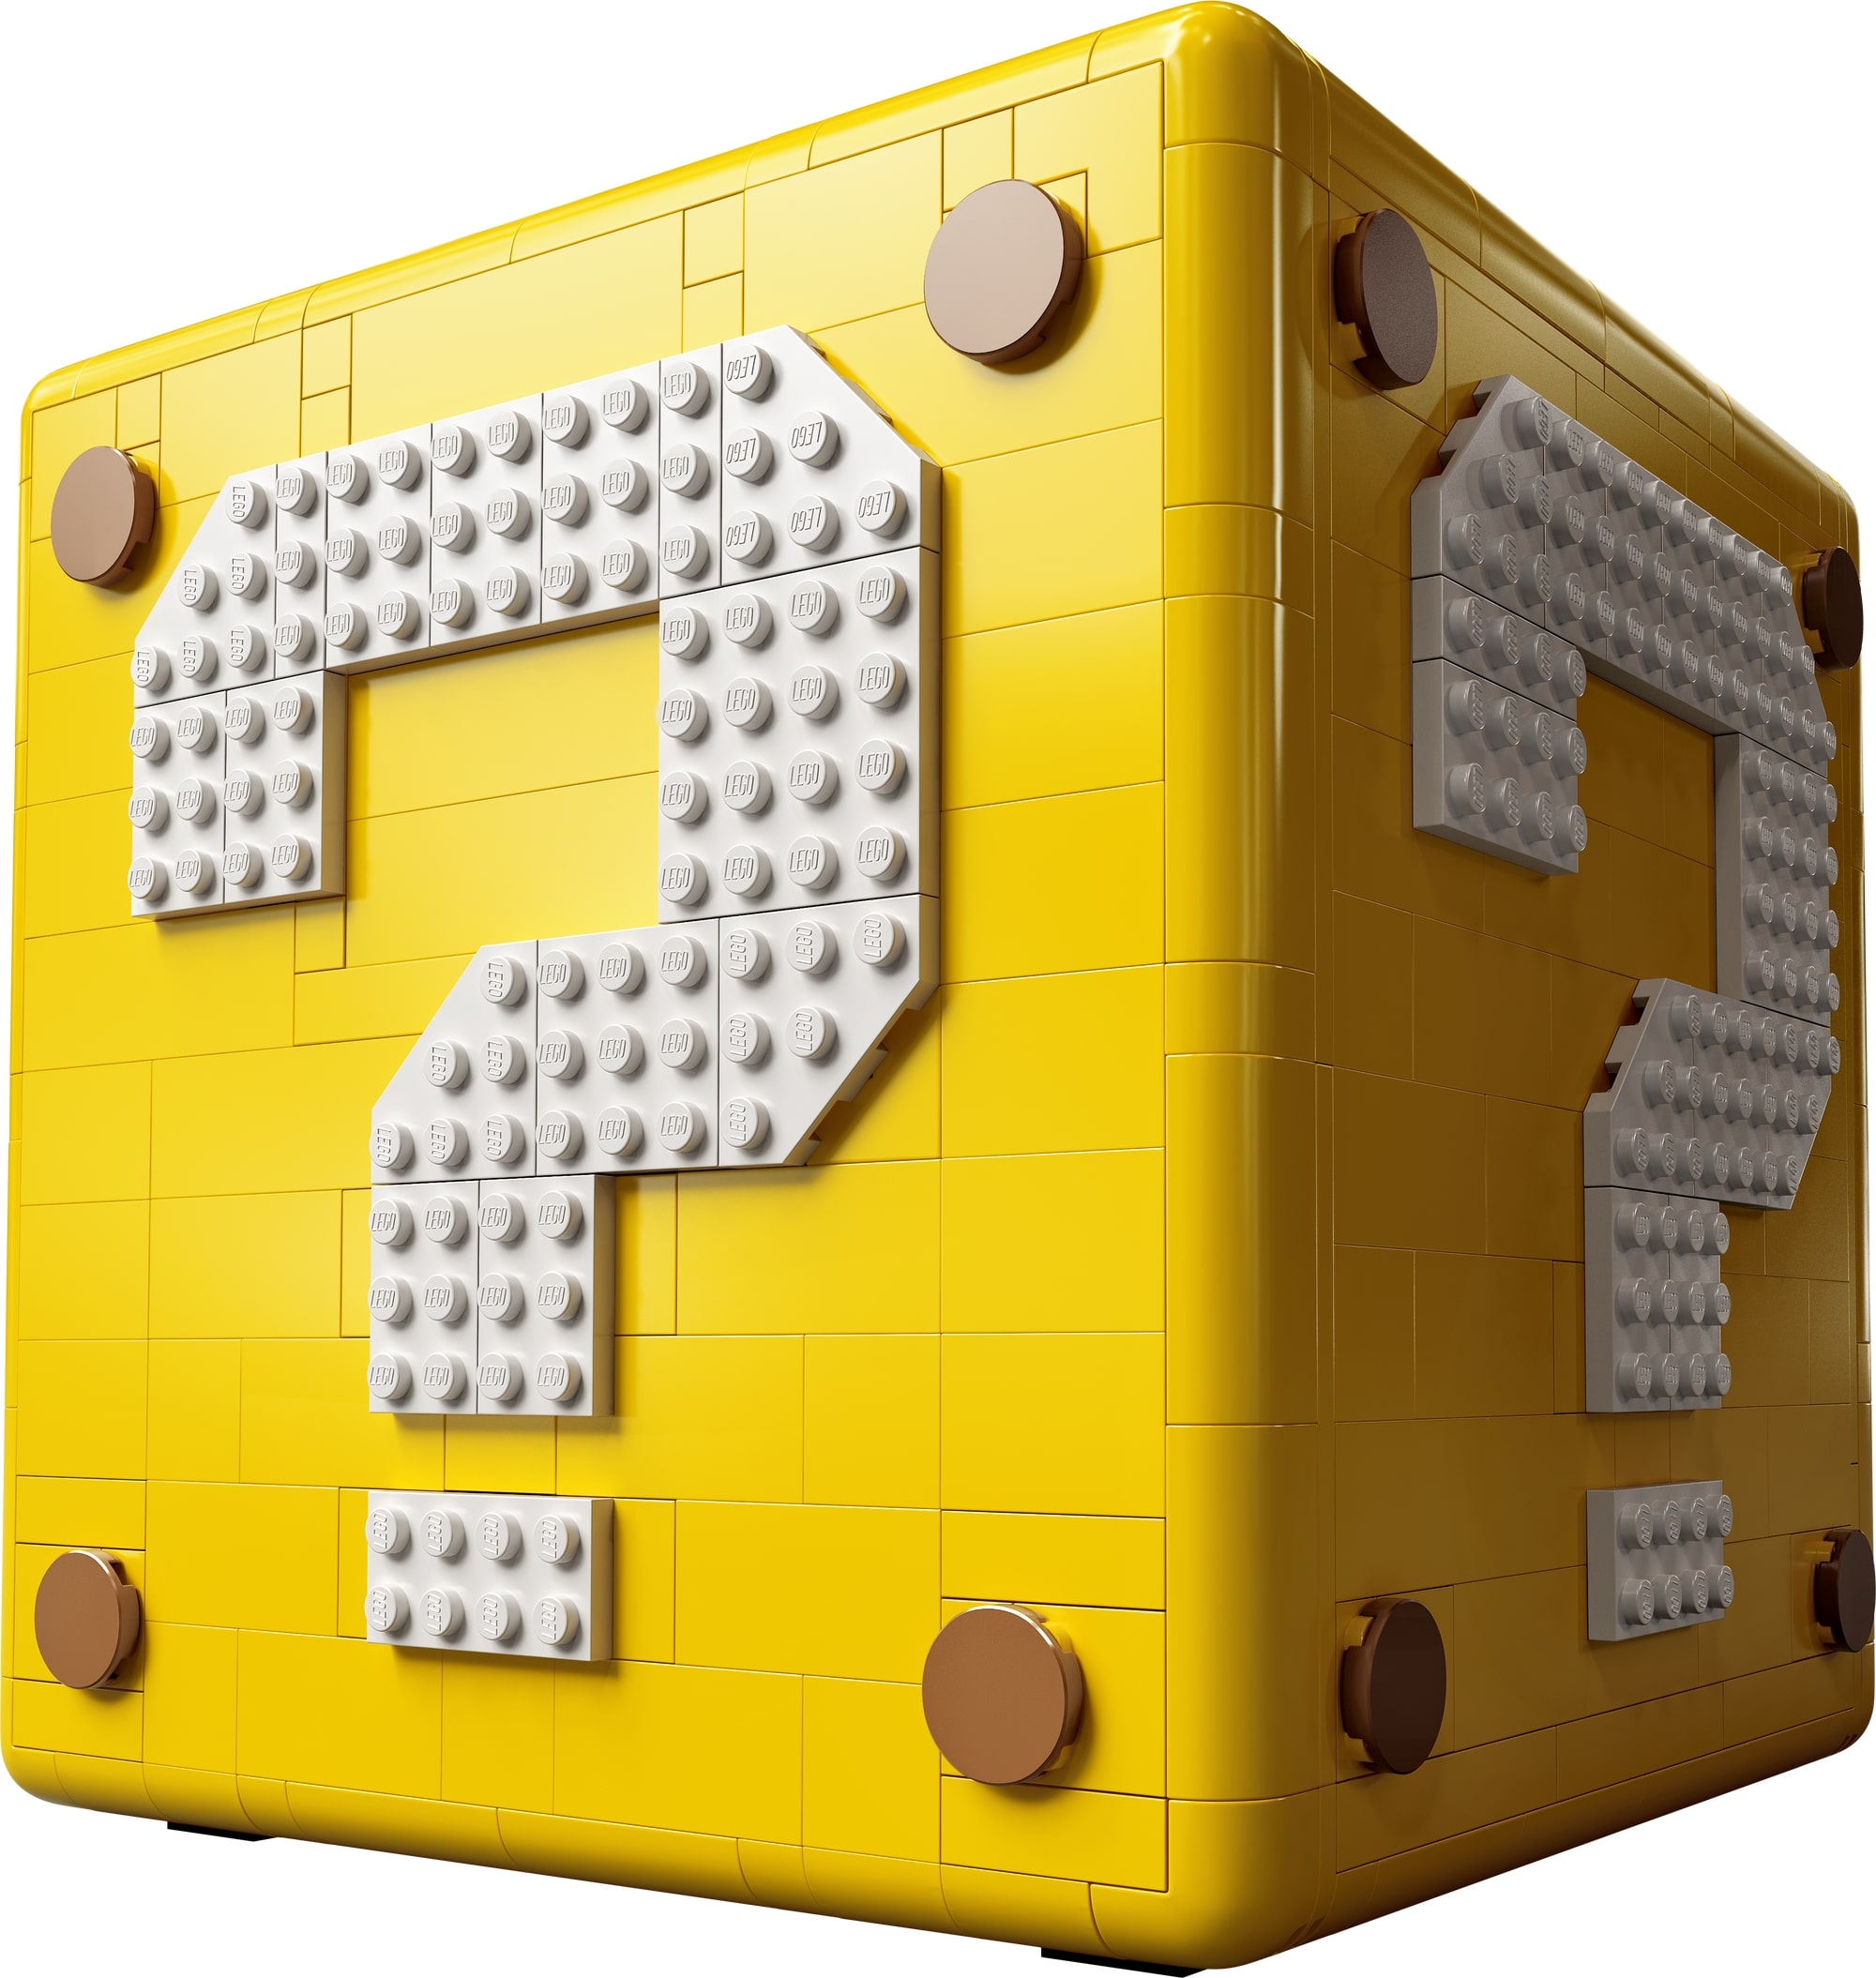 10月1日発売レゴ R スーパーマリオ スーパーマリオ64 ハテナブロック 新製品情報 21 スタッズ レゴ R Lego R 総合ファンニュースメディア